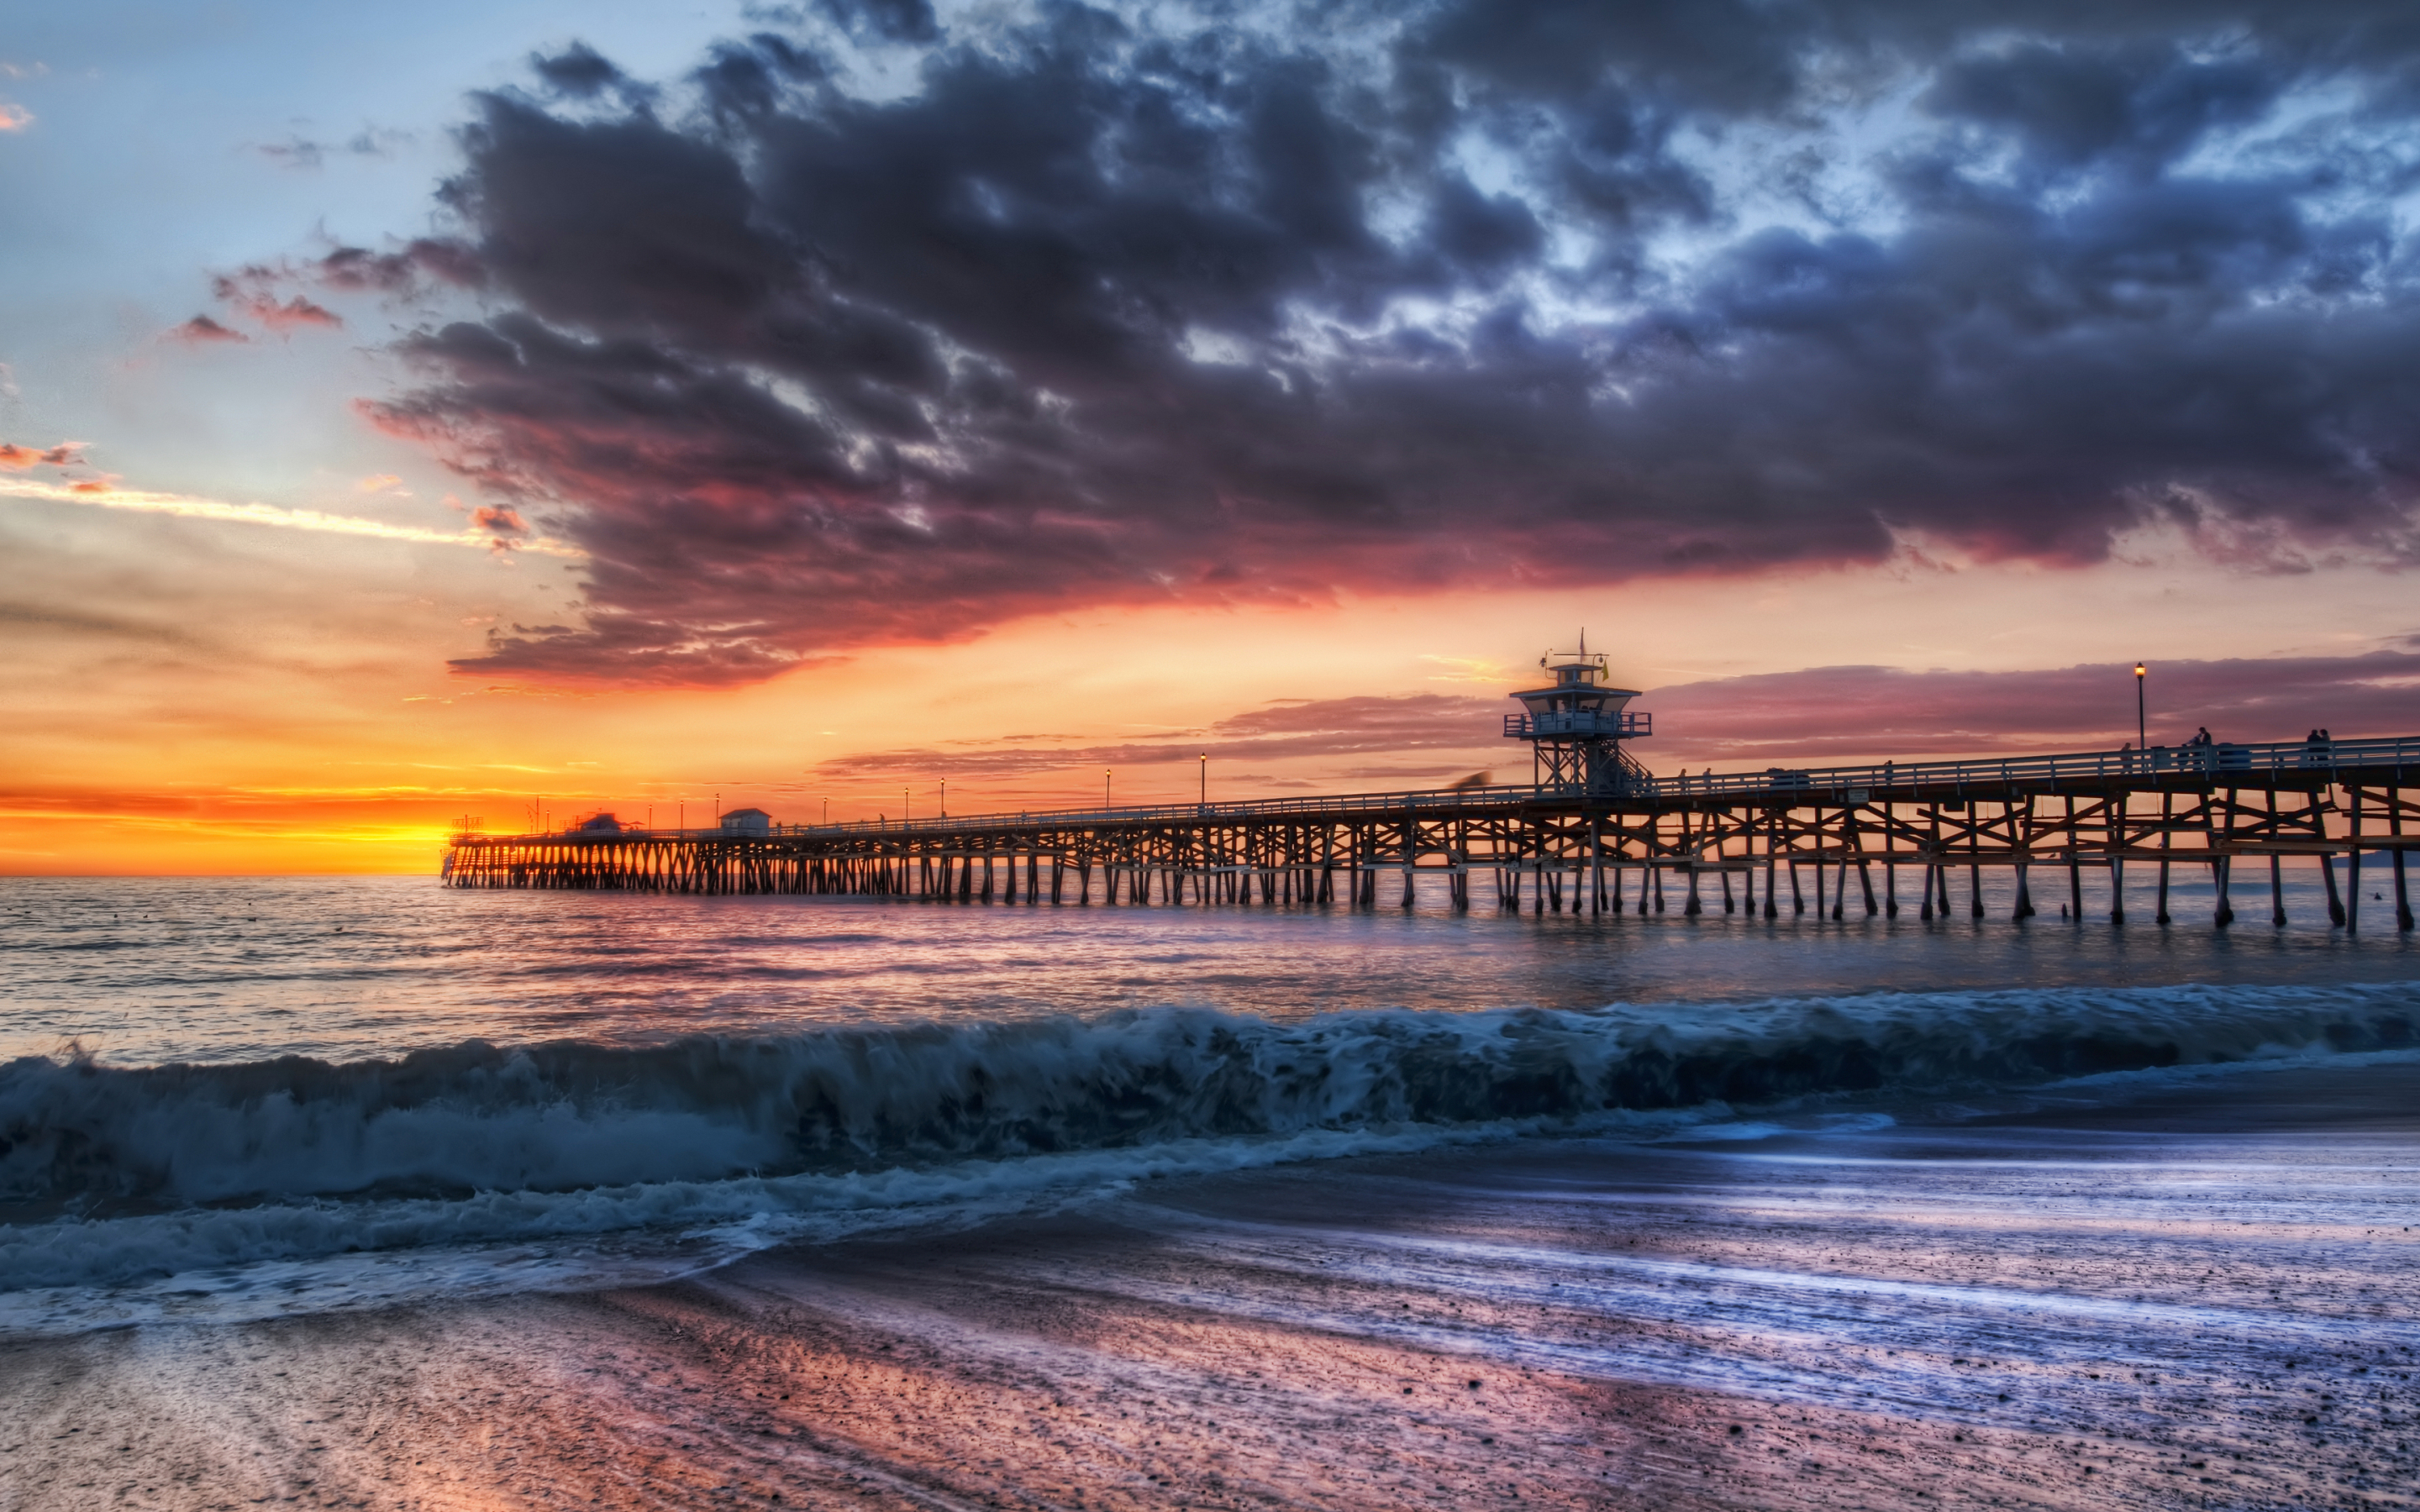 Wooden pier, beach, sunset, adorable view, 2880x1800 wallpaper